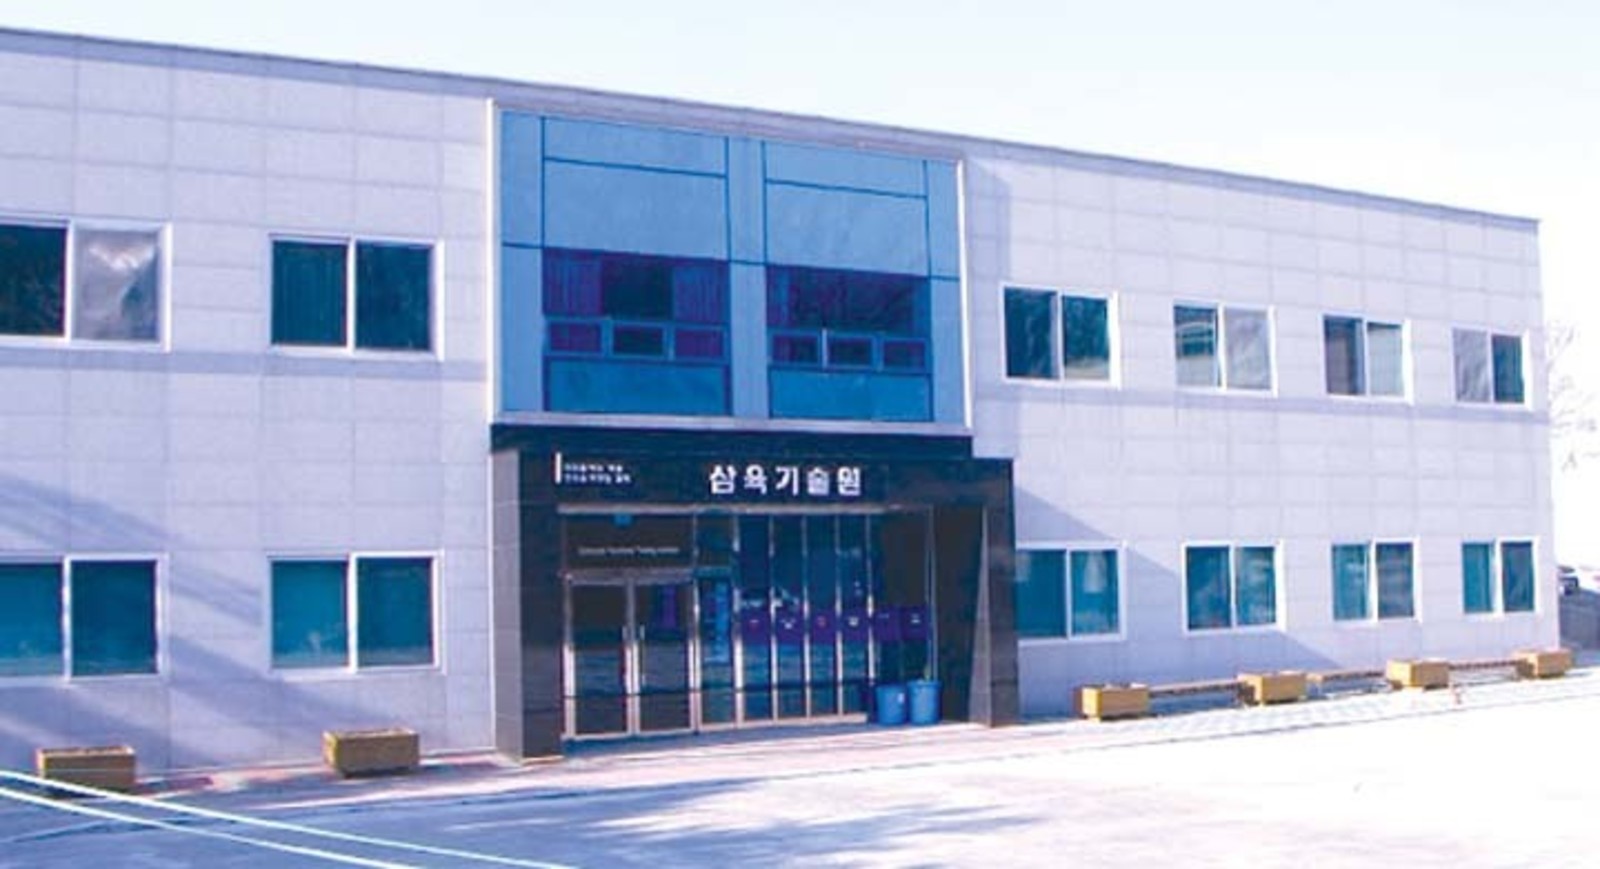 south korean school building